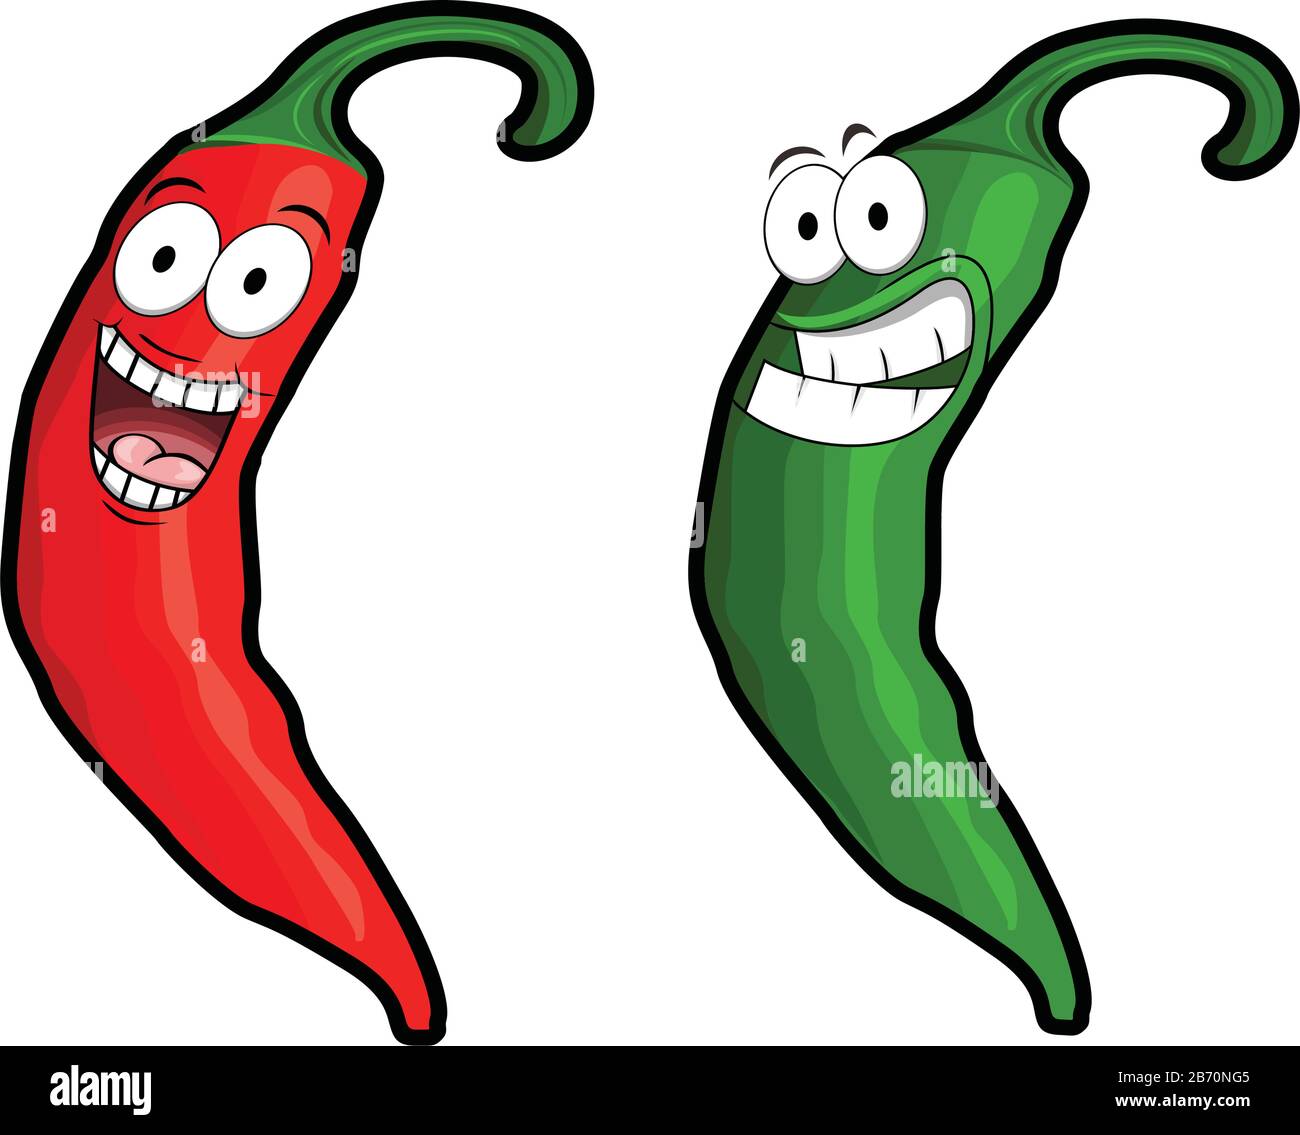 Vector illustration of funny chilli , cartoon red and green chilli vector illustration for logo purposes Stock Vector